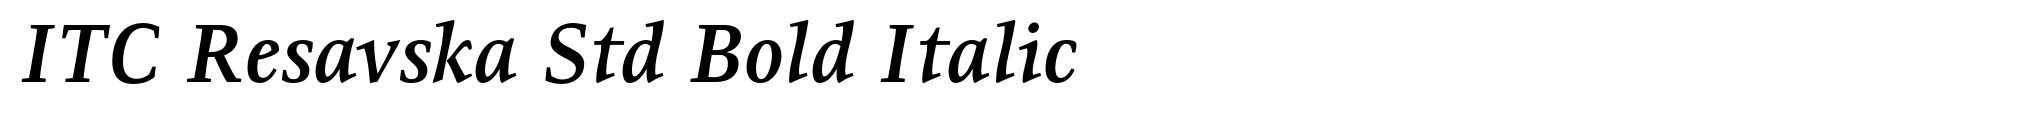 ITC Resavska Std Bold Italic image